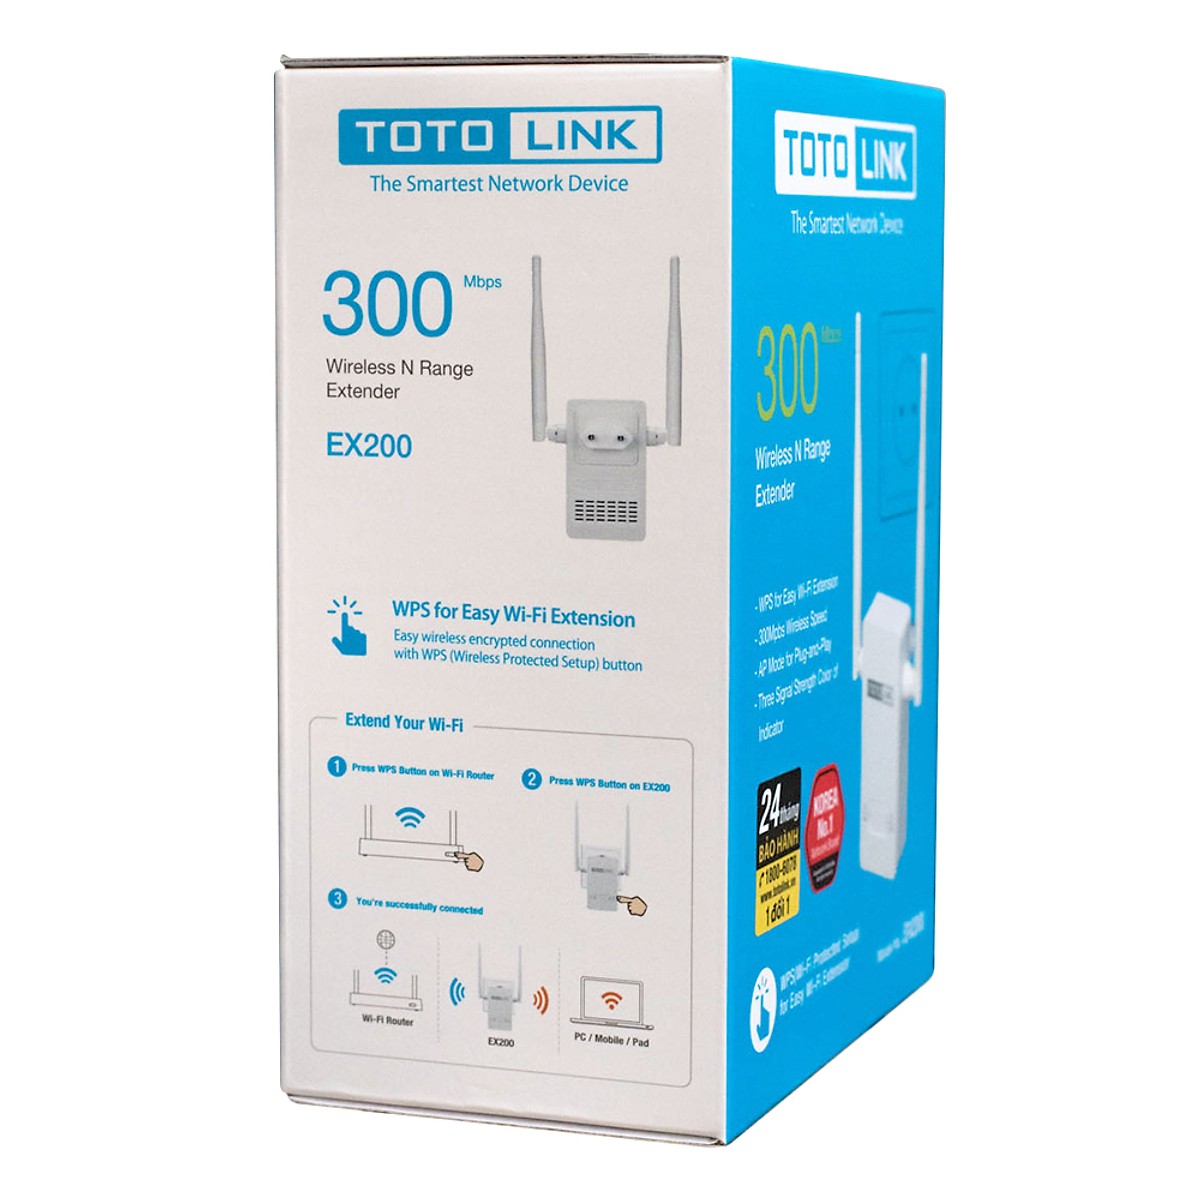 Bộ Kích Sóng Wifi 300Mbps Totolink EX200 - Bộ Mở Rộng Sóng Wifi (Tặng kèm bộ vệ sinh máy tính, điện thoai) - Hàng Chính Hãng